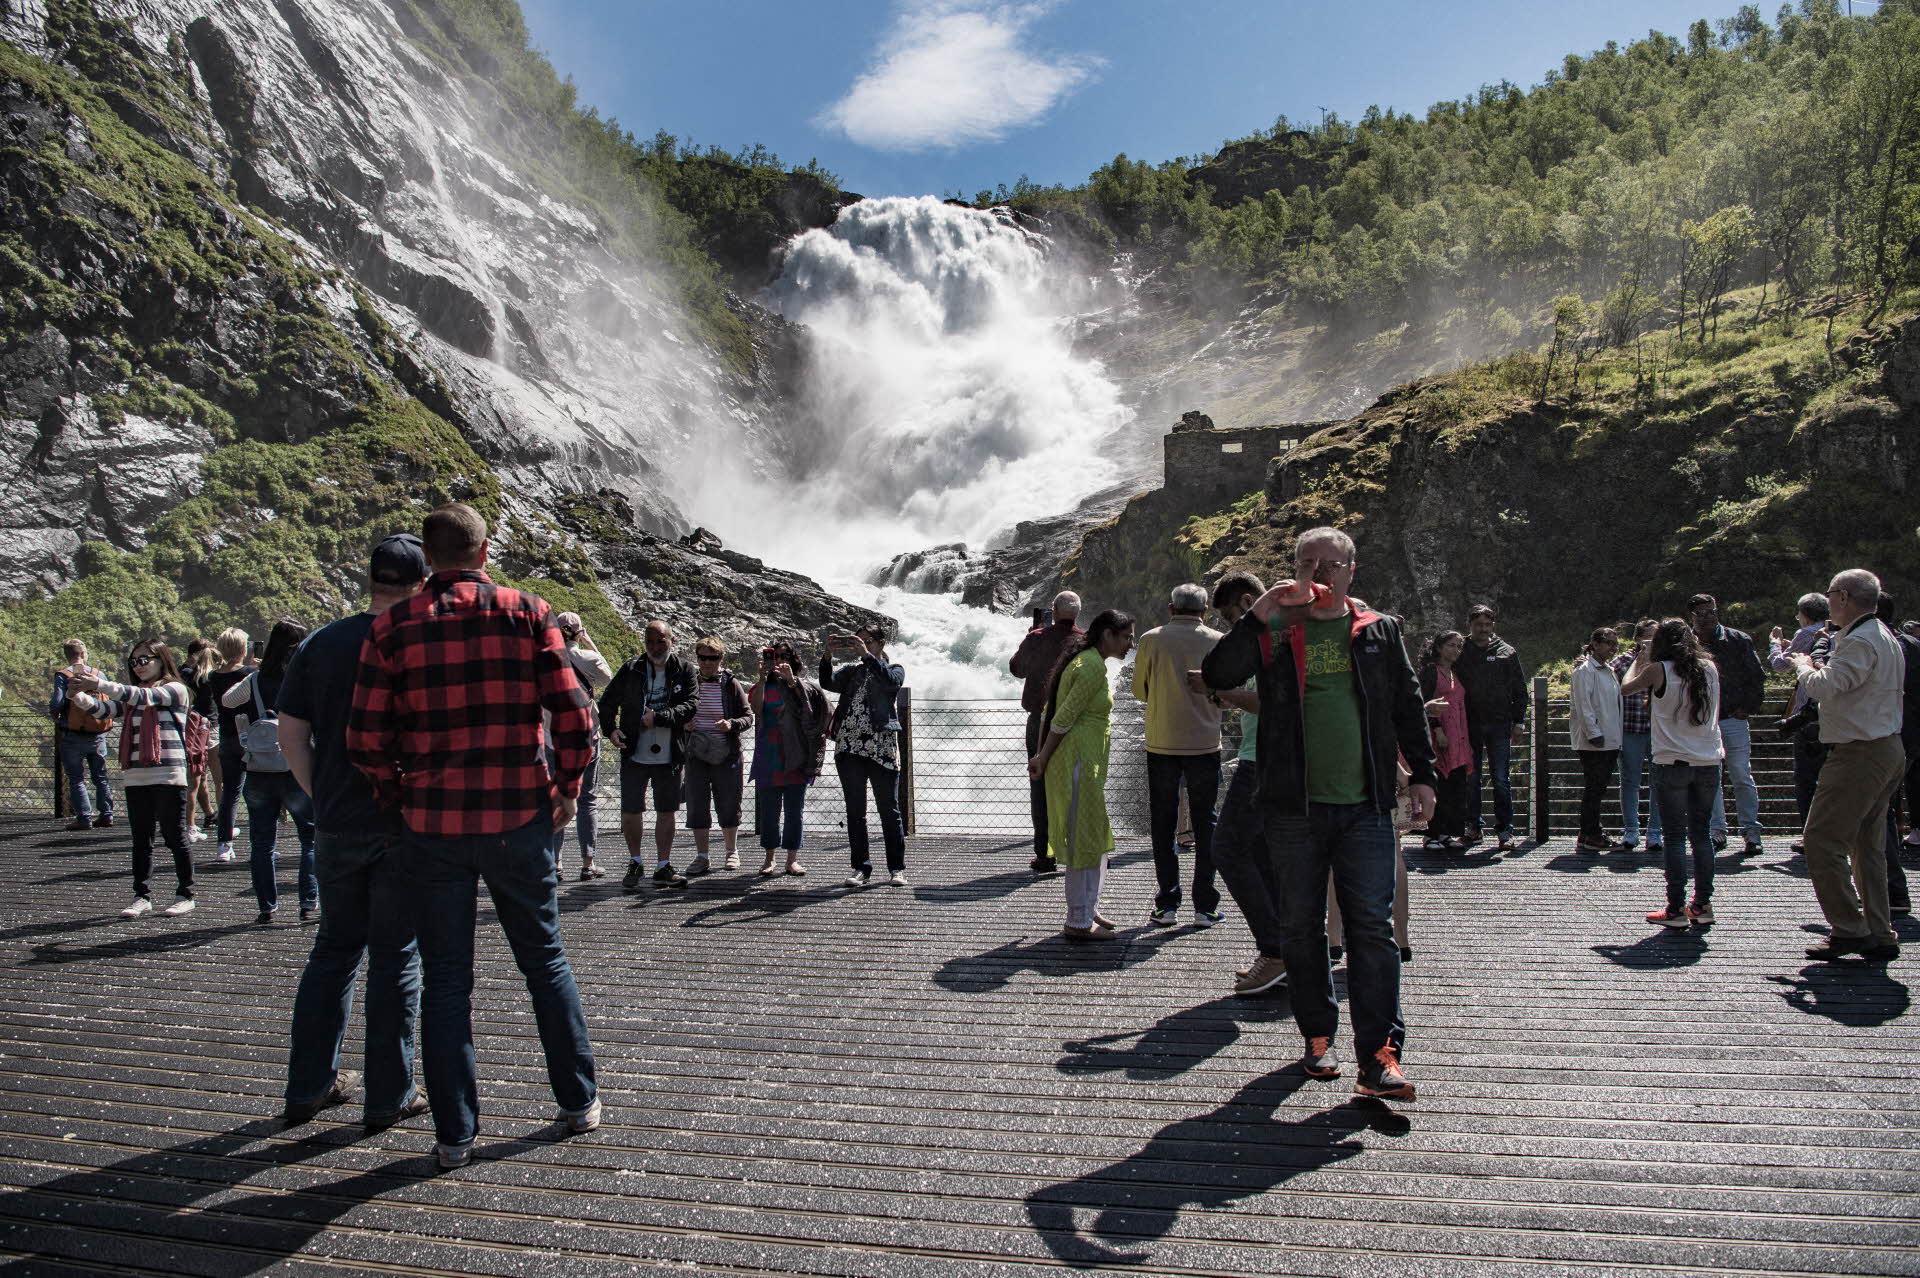 夏にごうごうとした迫力のあるショースフォッセン(Kjosfossen)滝を見下ろすフロム鉄道の展望台に立つ観光客のグループ 